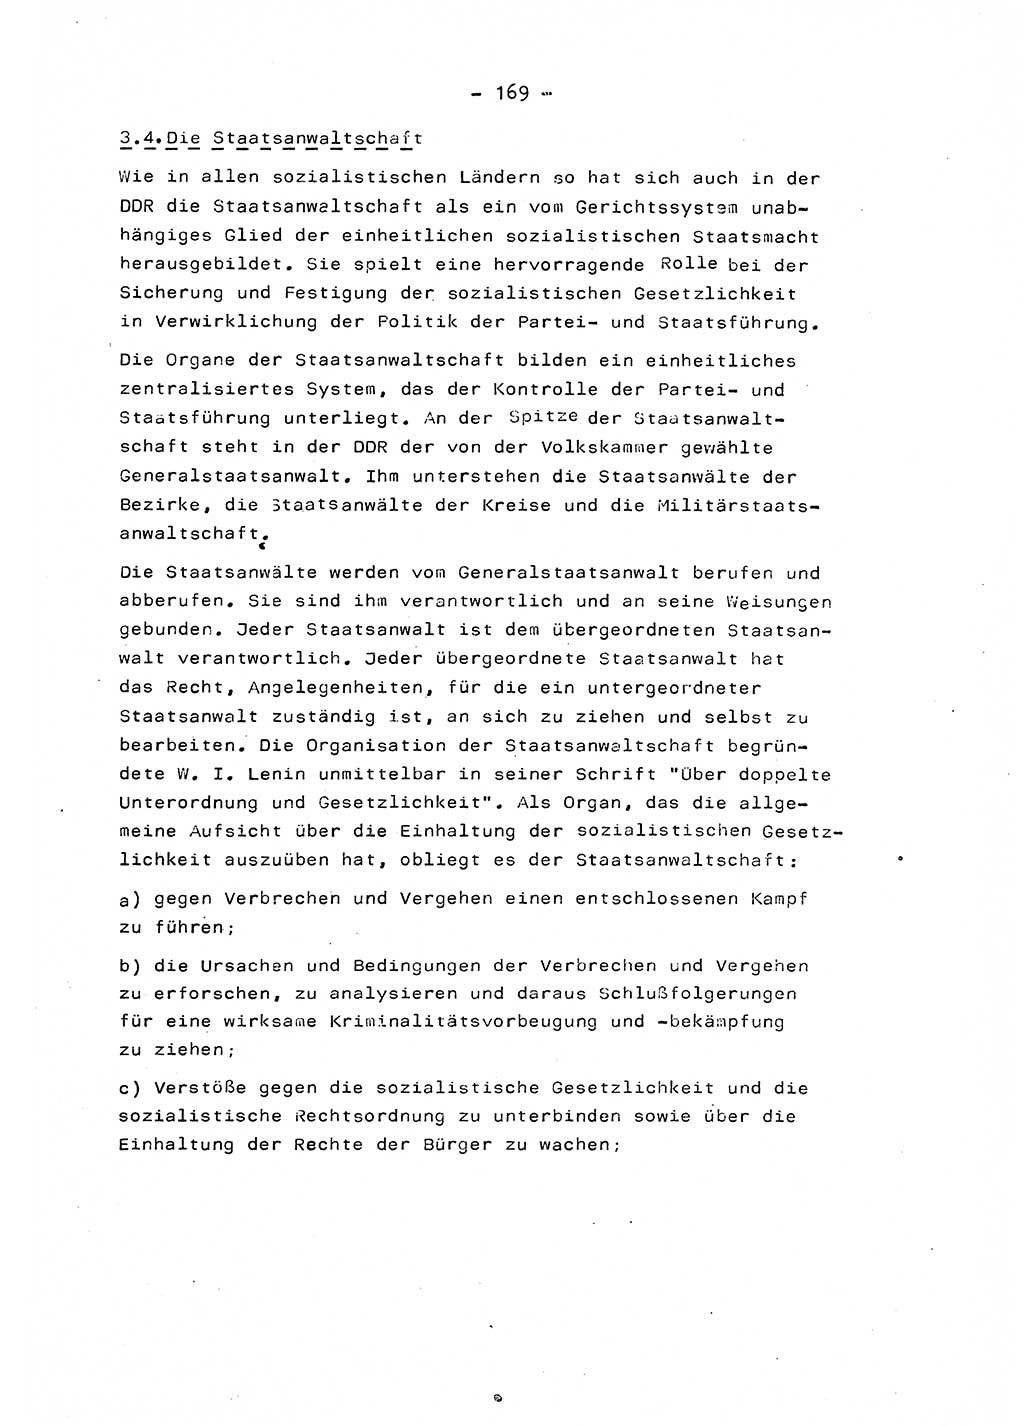 Marxistisch-leninistische Staats- und Rechtstheorie [Deutsche Demokratische Republik (DDR)] 1975, Seite 169 (ML St.-R.-Th. DDR 1975, S. 169)